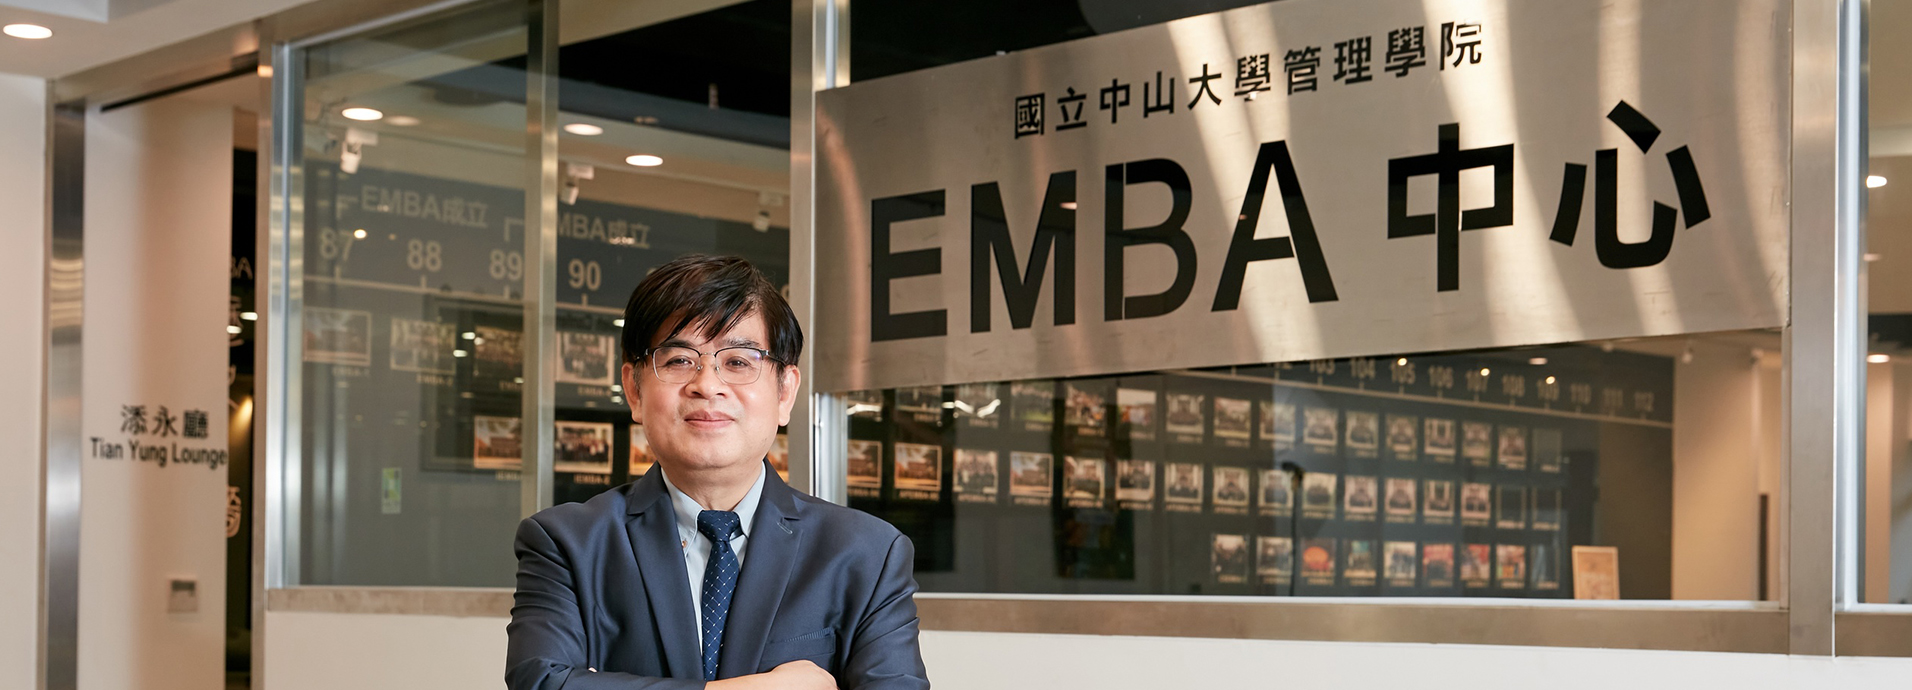 管理學院EMBA培育新世紀企業新領航人